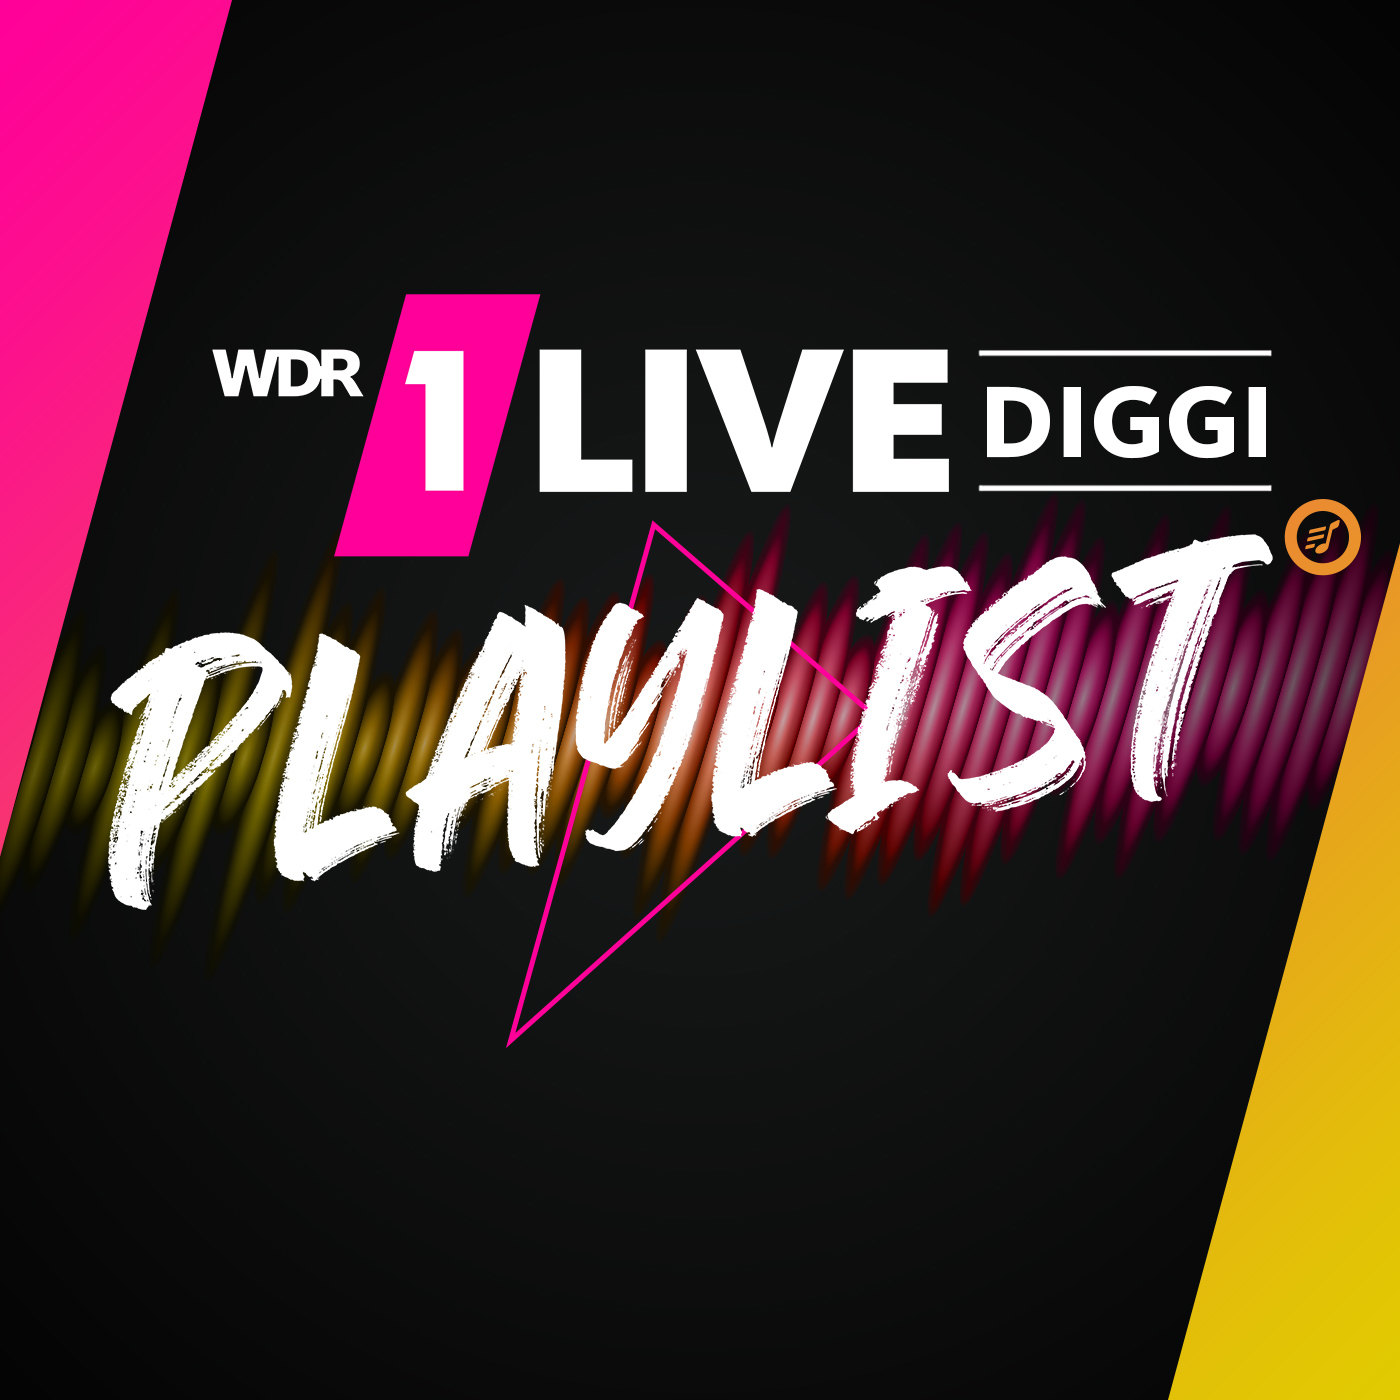 Die DIGGI-Playlist, Titelsuche und die letzten Songs - Playlist - On Air - 1LIVE DIGGI - Radio